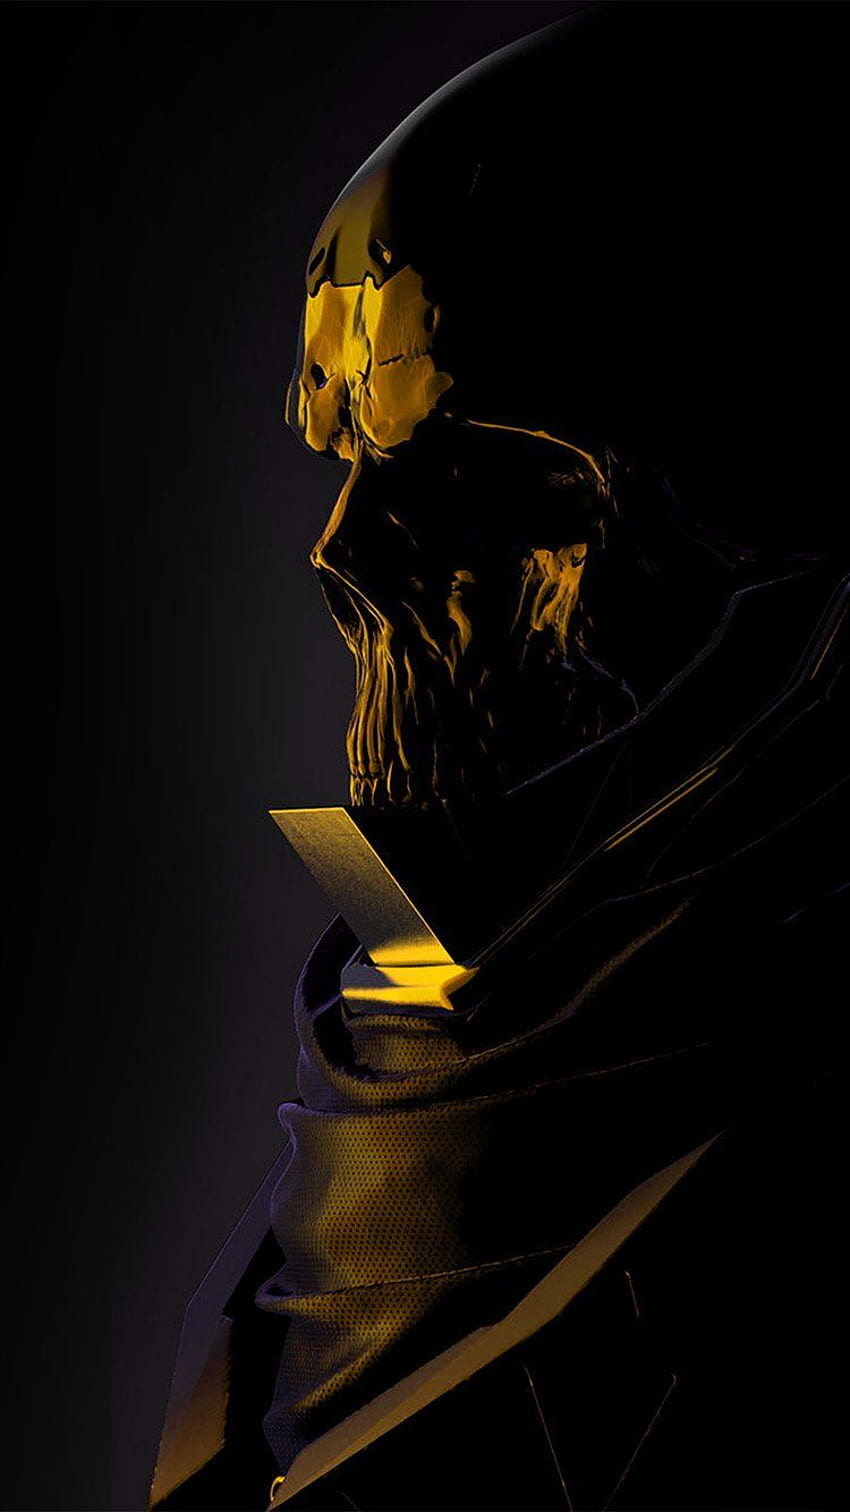 iphone 6 。 mario stabile 奇妙な暗いイラスト アート スカル ゴールド、ブラック、ゴールド 6 プラス HD電話の壁紙